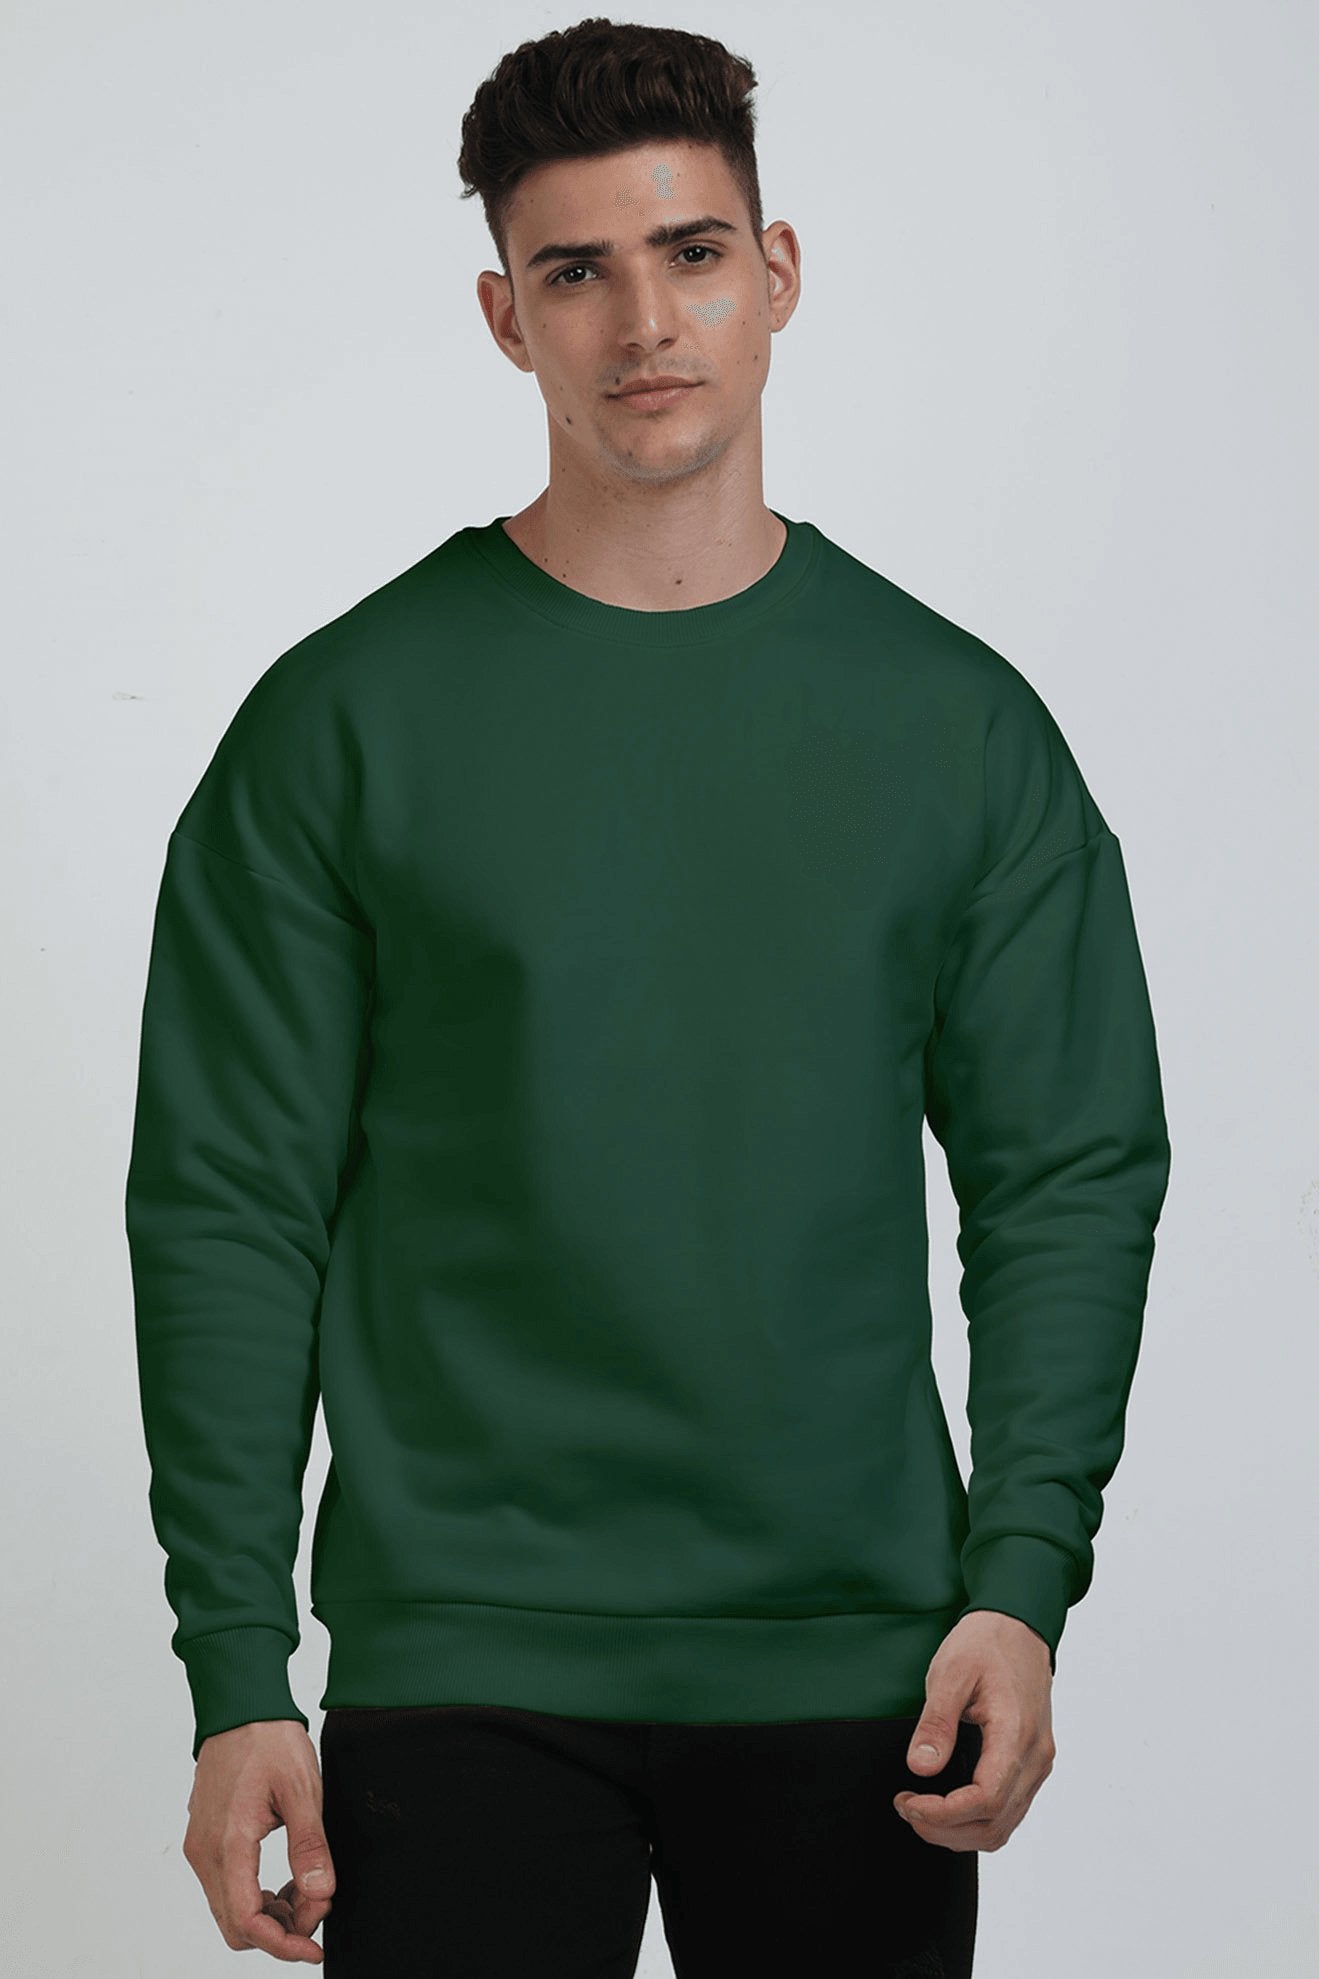 Unisex Oversized Sweatshirts - The Vybe Store